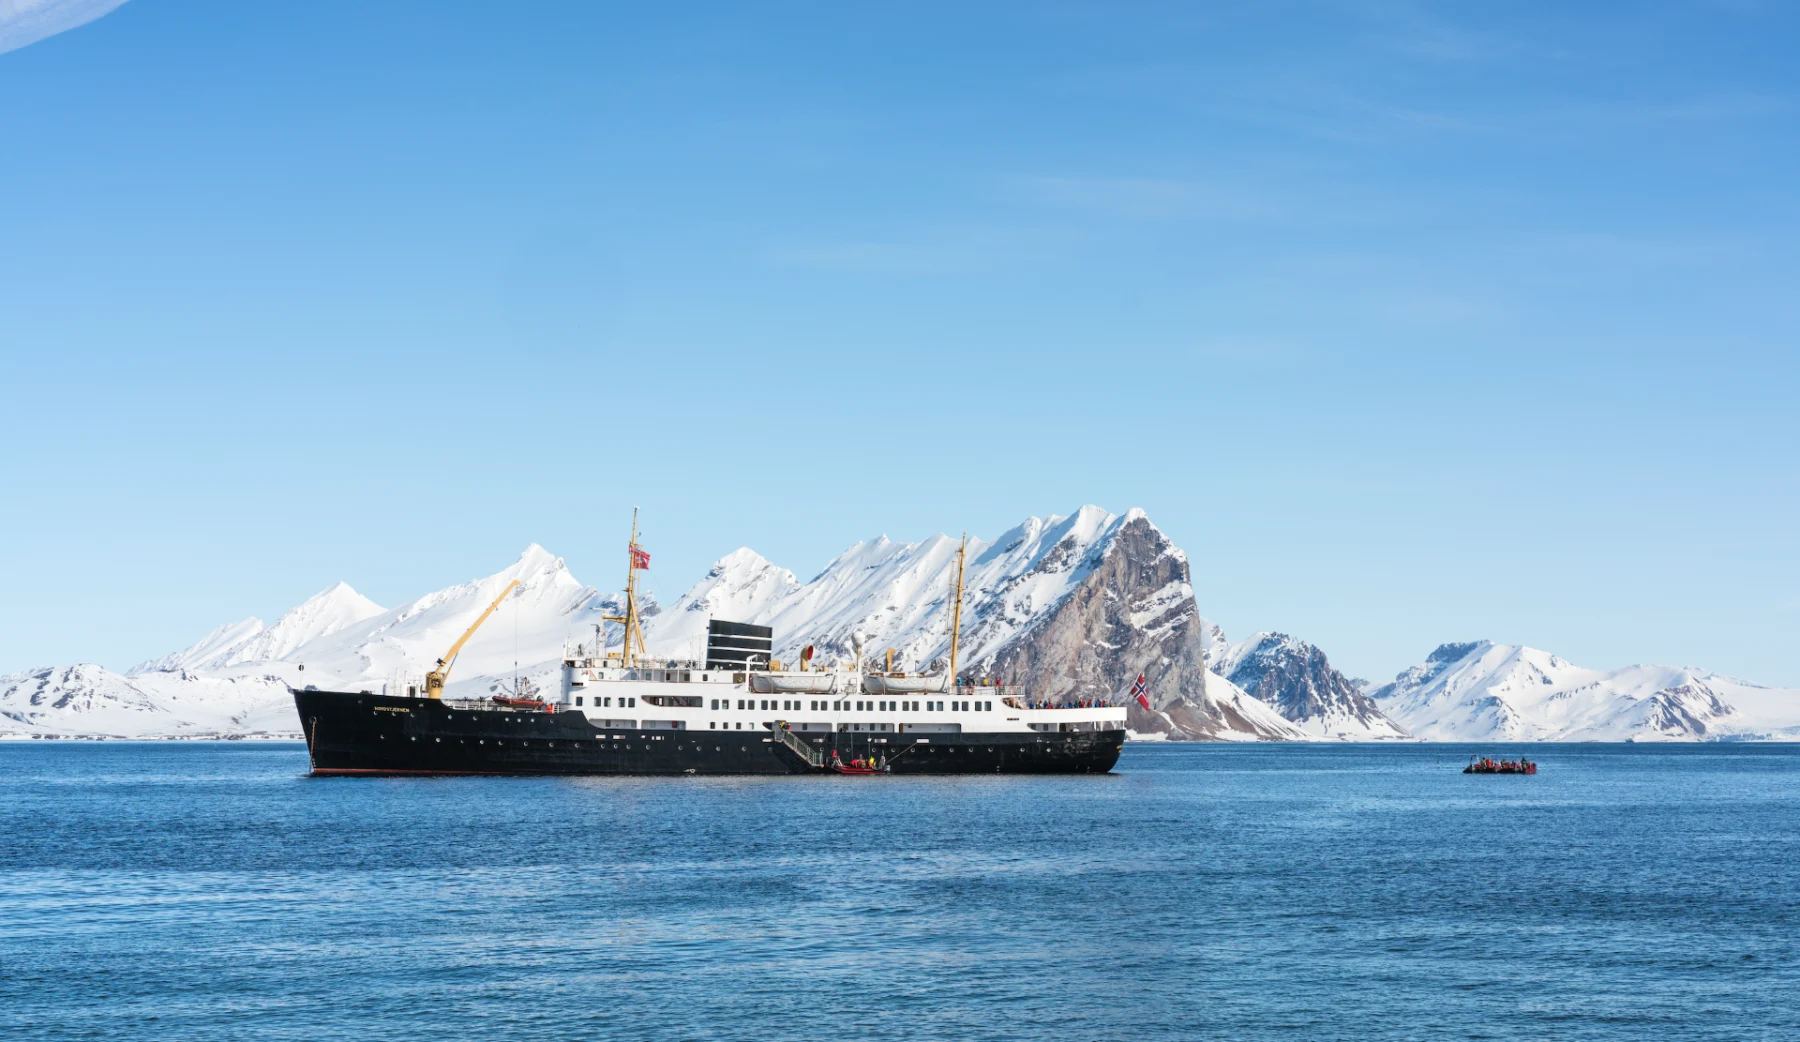 ms-nordstjernen-svalbard-ship